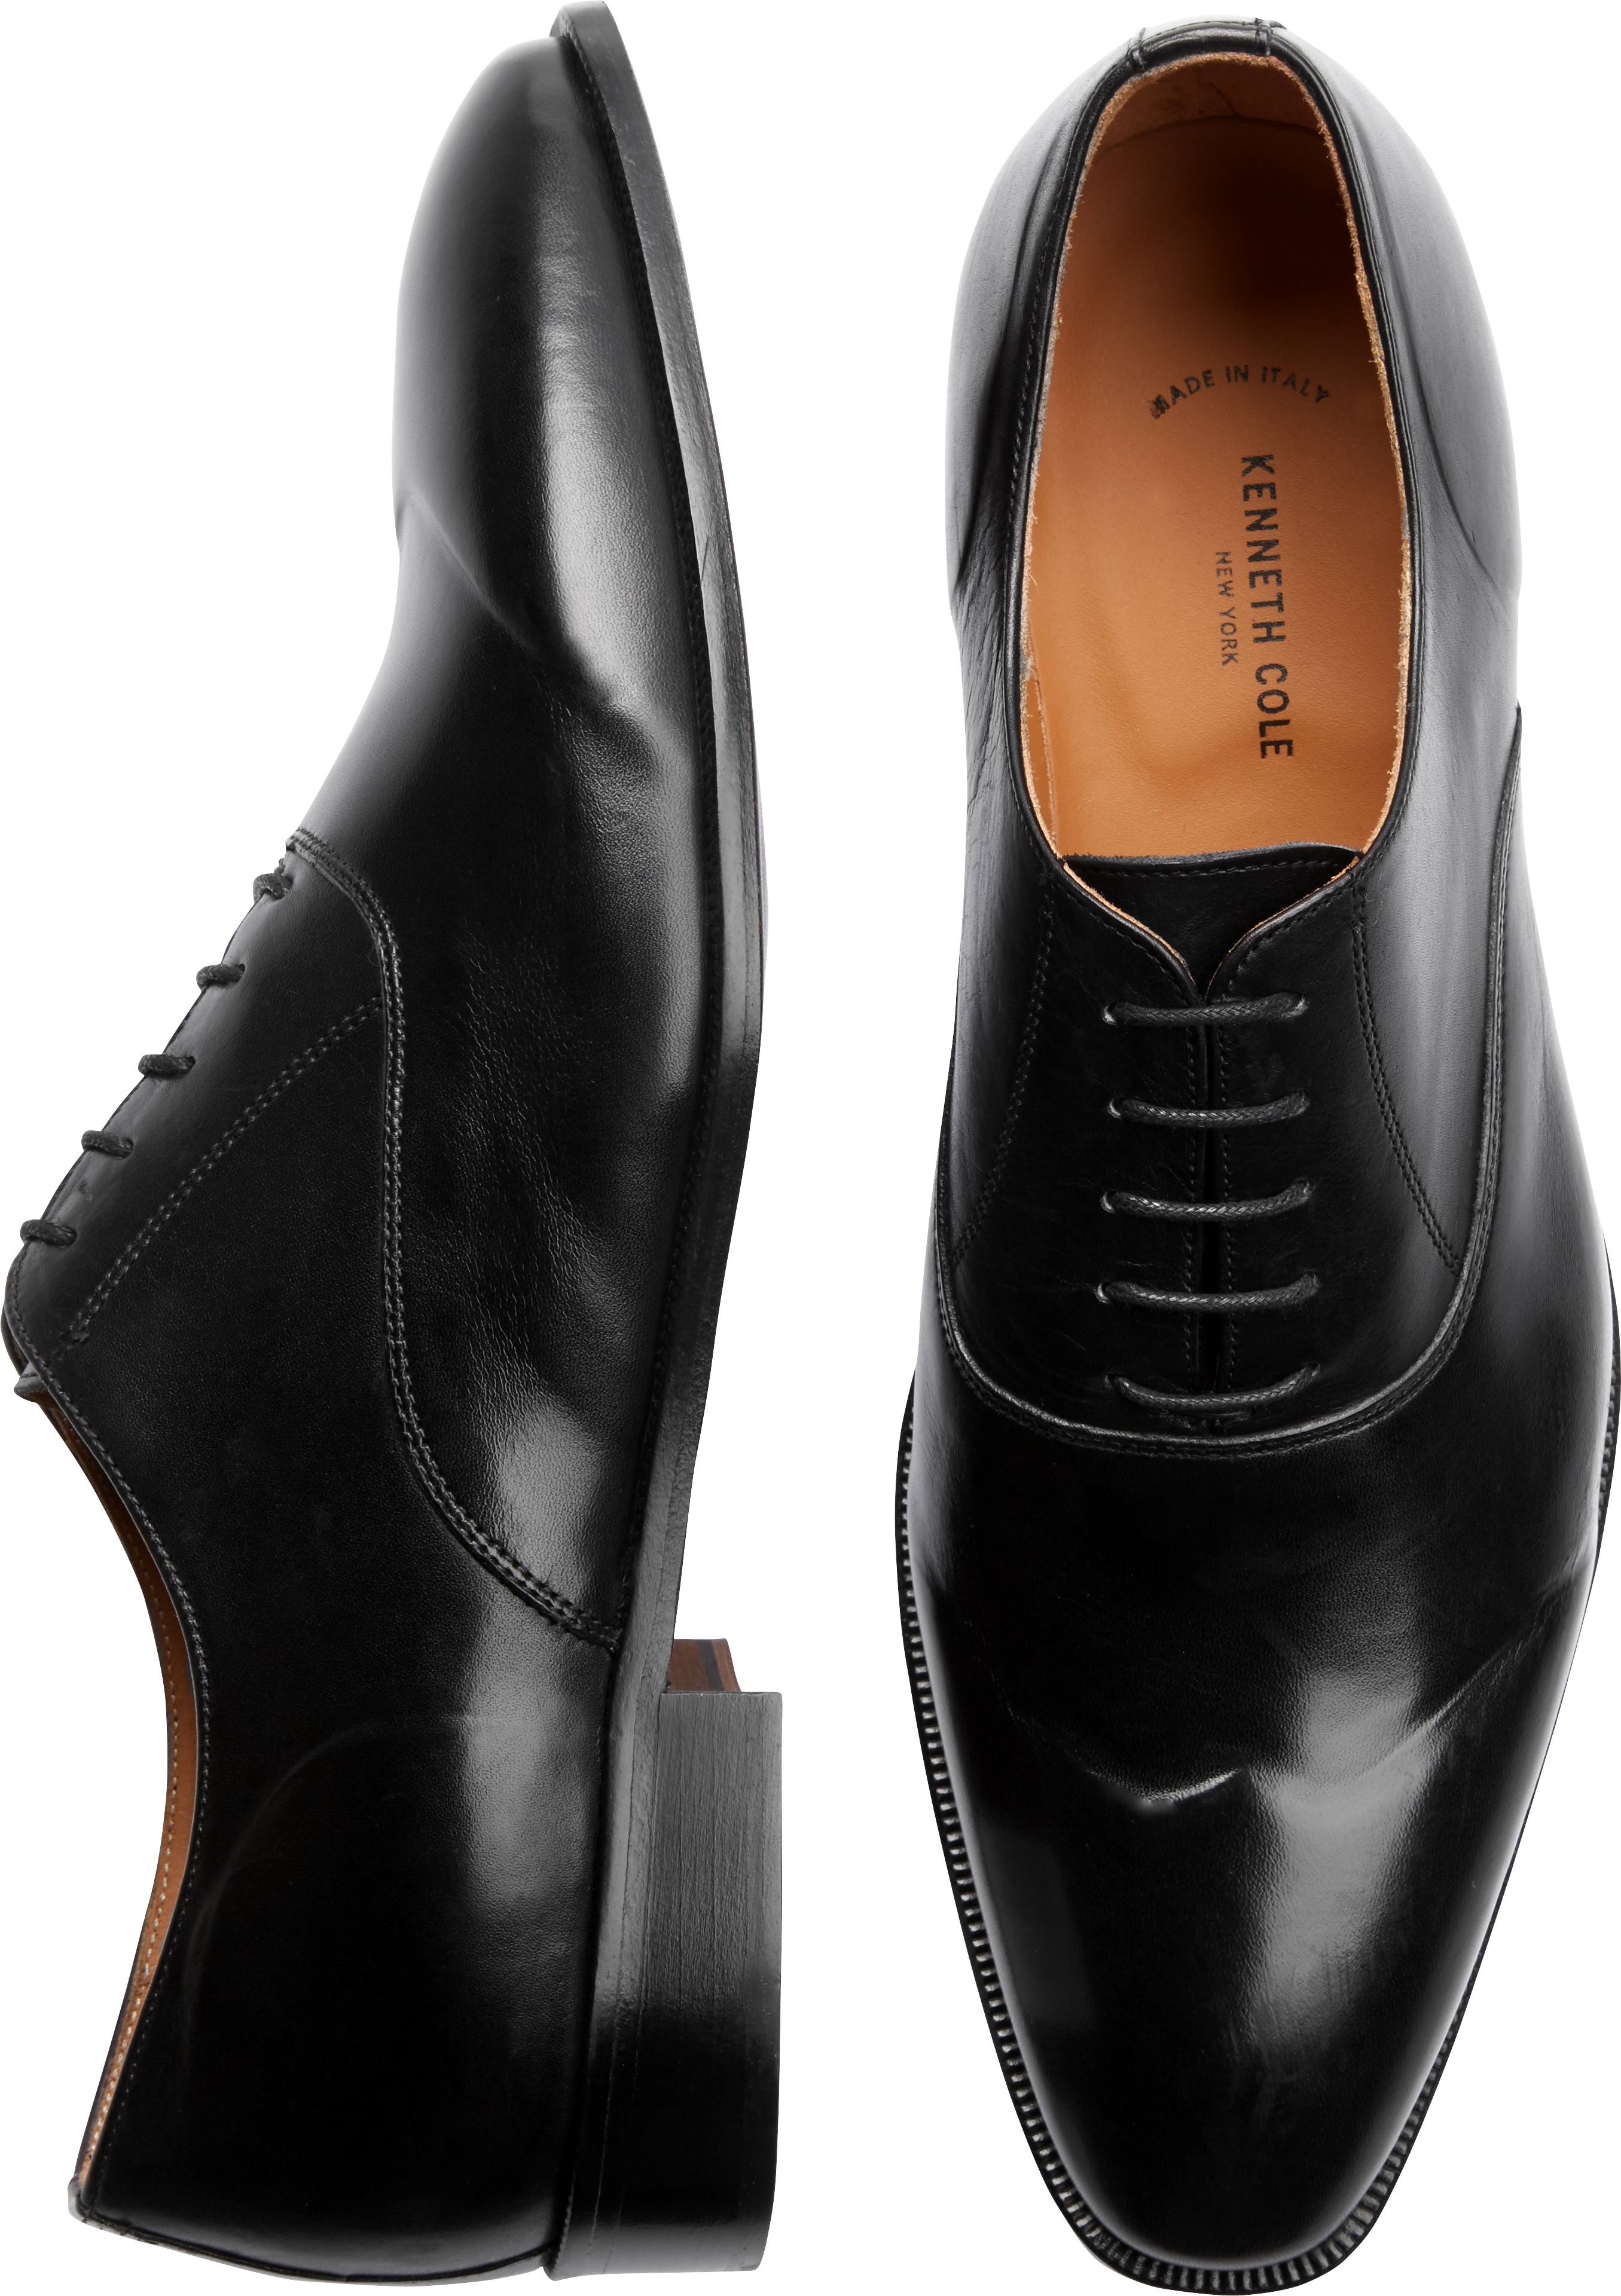 Cole Haan Lenox Black Oxford - Dress Shoes | Men's Wearhouse